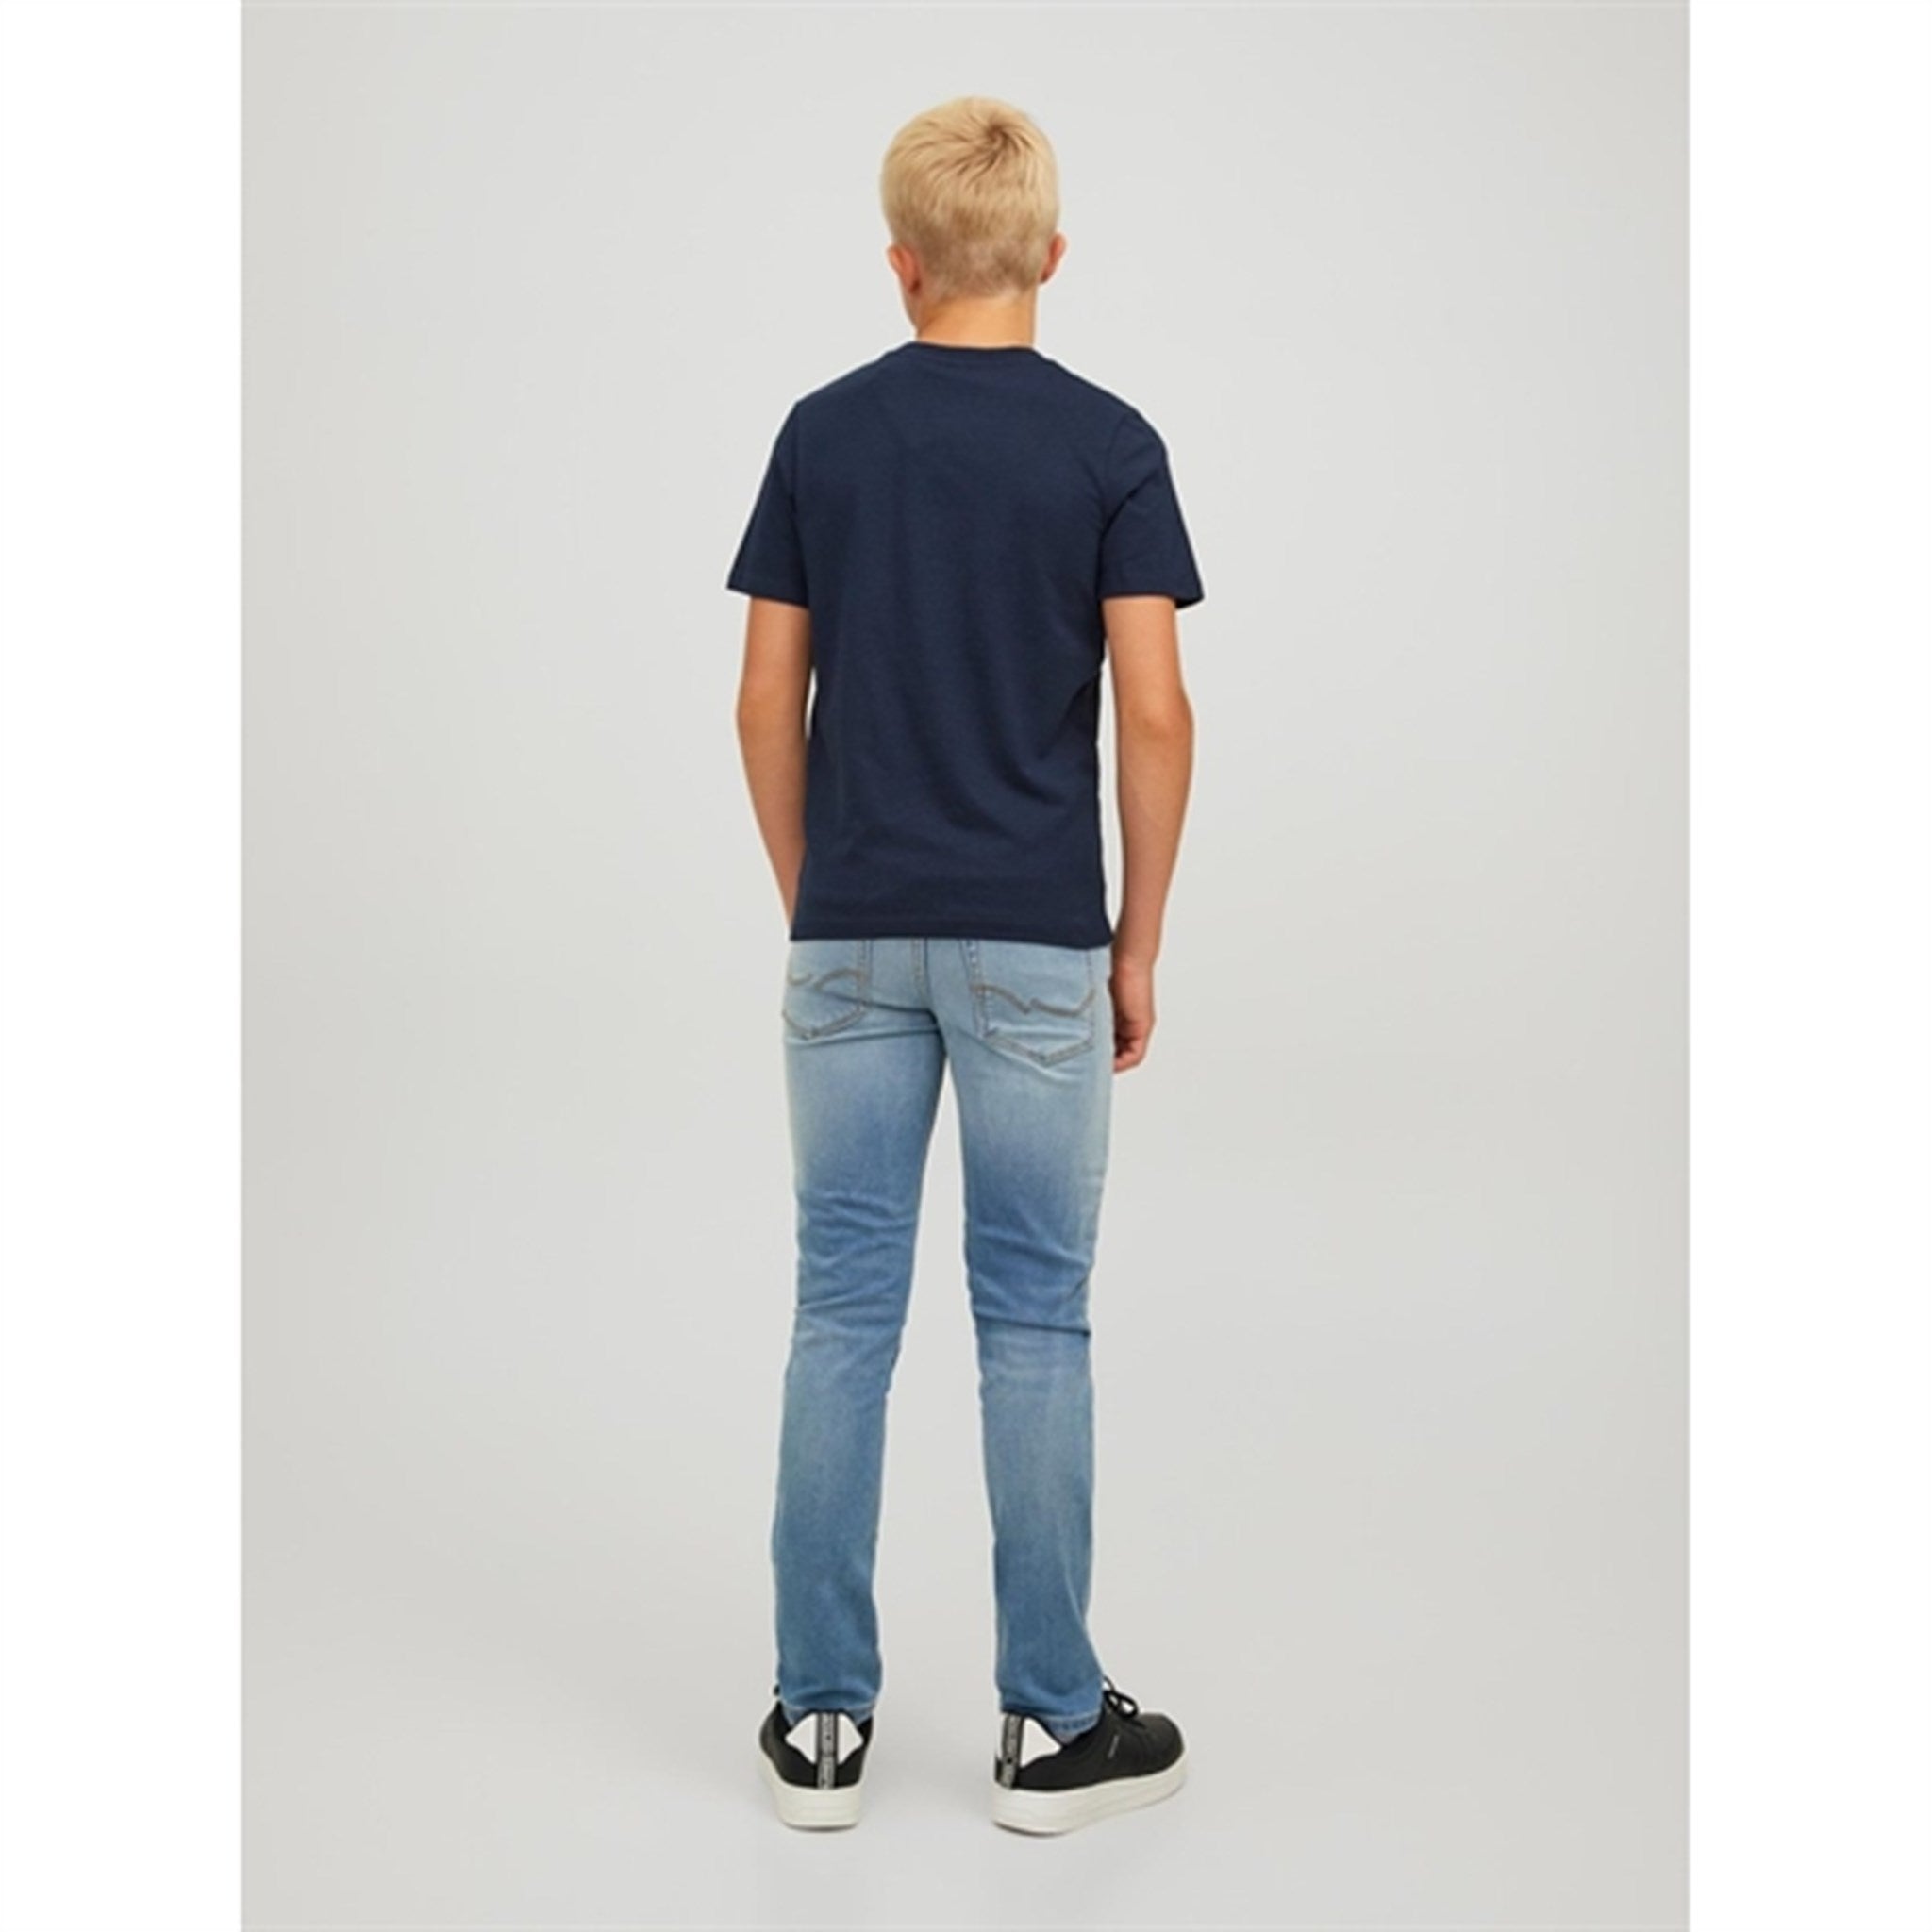 Jack & Jones Junior Navy Blazer Copenhagen T-Shirt Noos 4